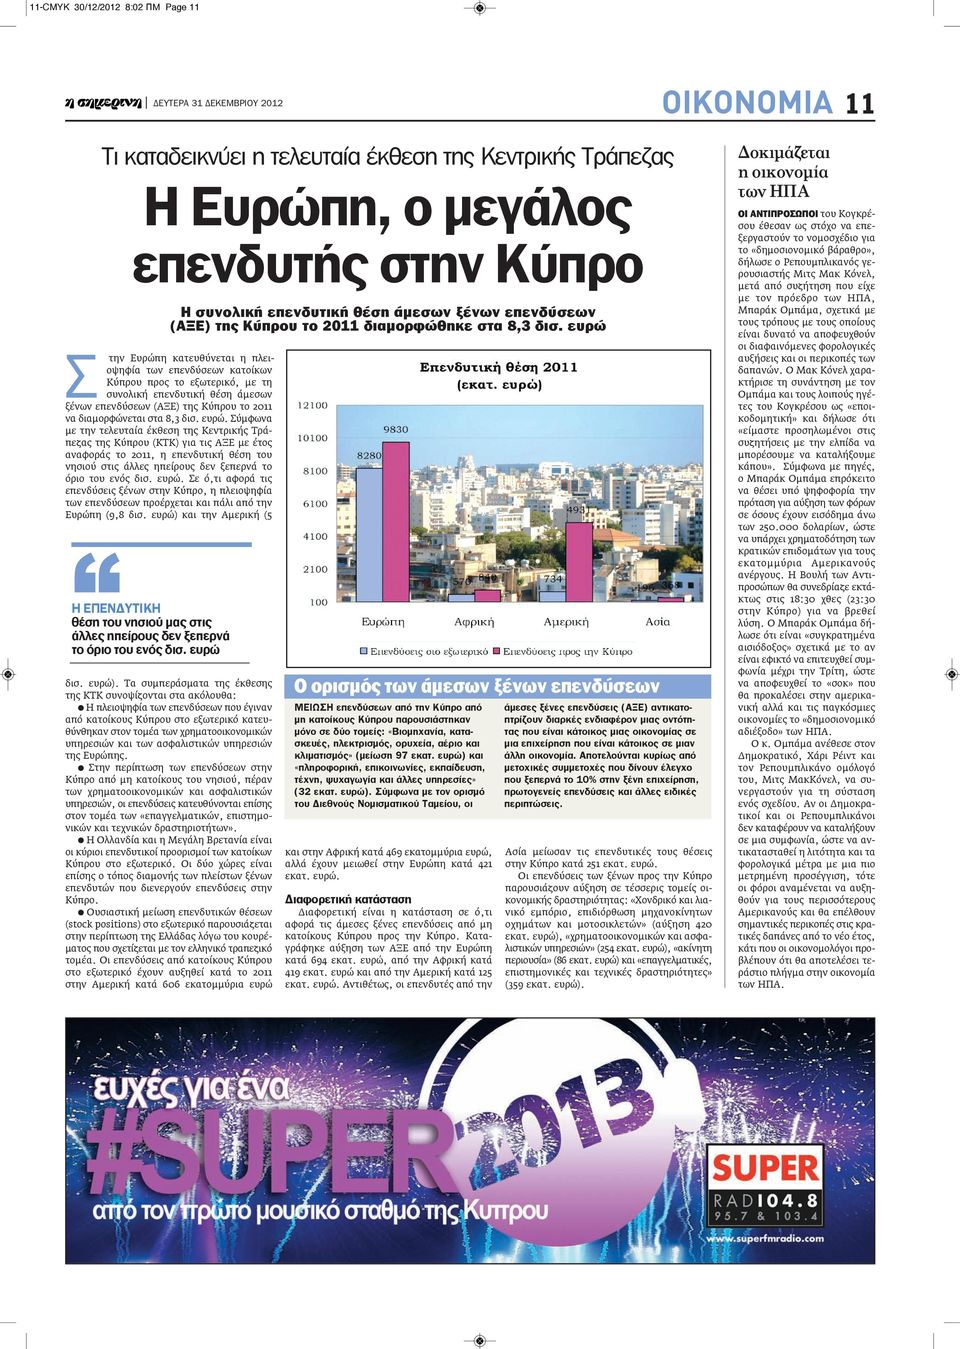 Σύμφωνα με την τελευταία έκθεση της Κεντρικής Τράπεζας της Κύπρου (ΚΤΚ) για τις ΑΞΕ με έτος αναφοράς το 2011, η επενδυτική θέση του νησιού στις άλλες ηπείρους δεν ξεπερνά το όριο του ενός δισ. ευρώ.